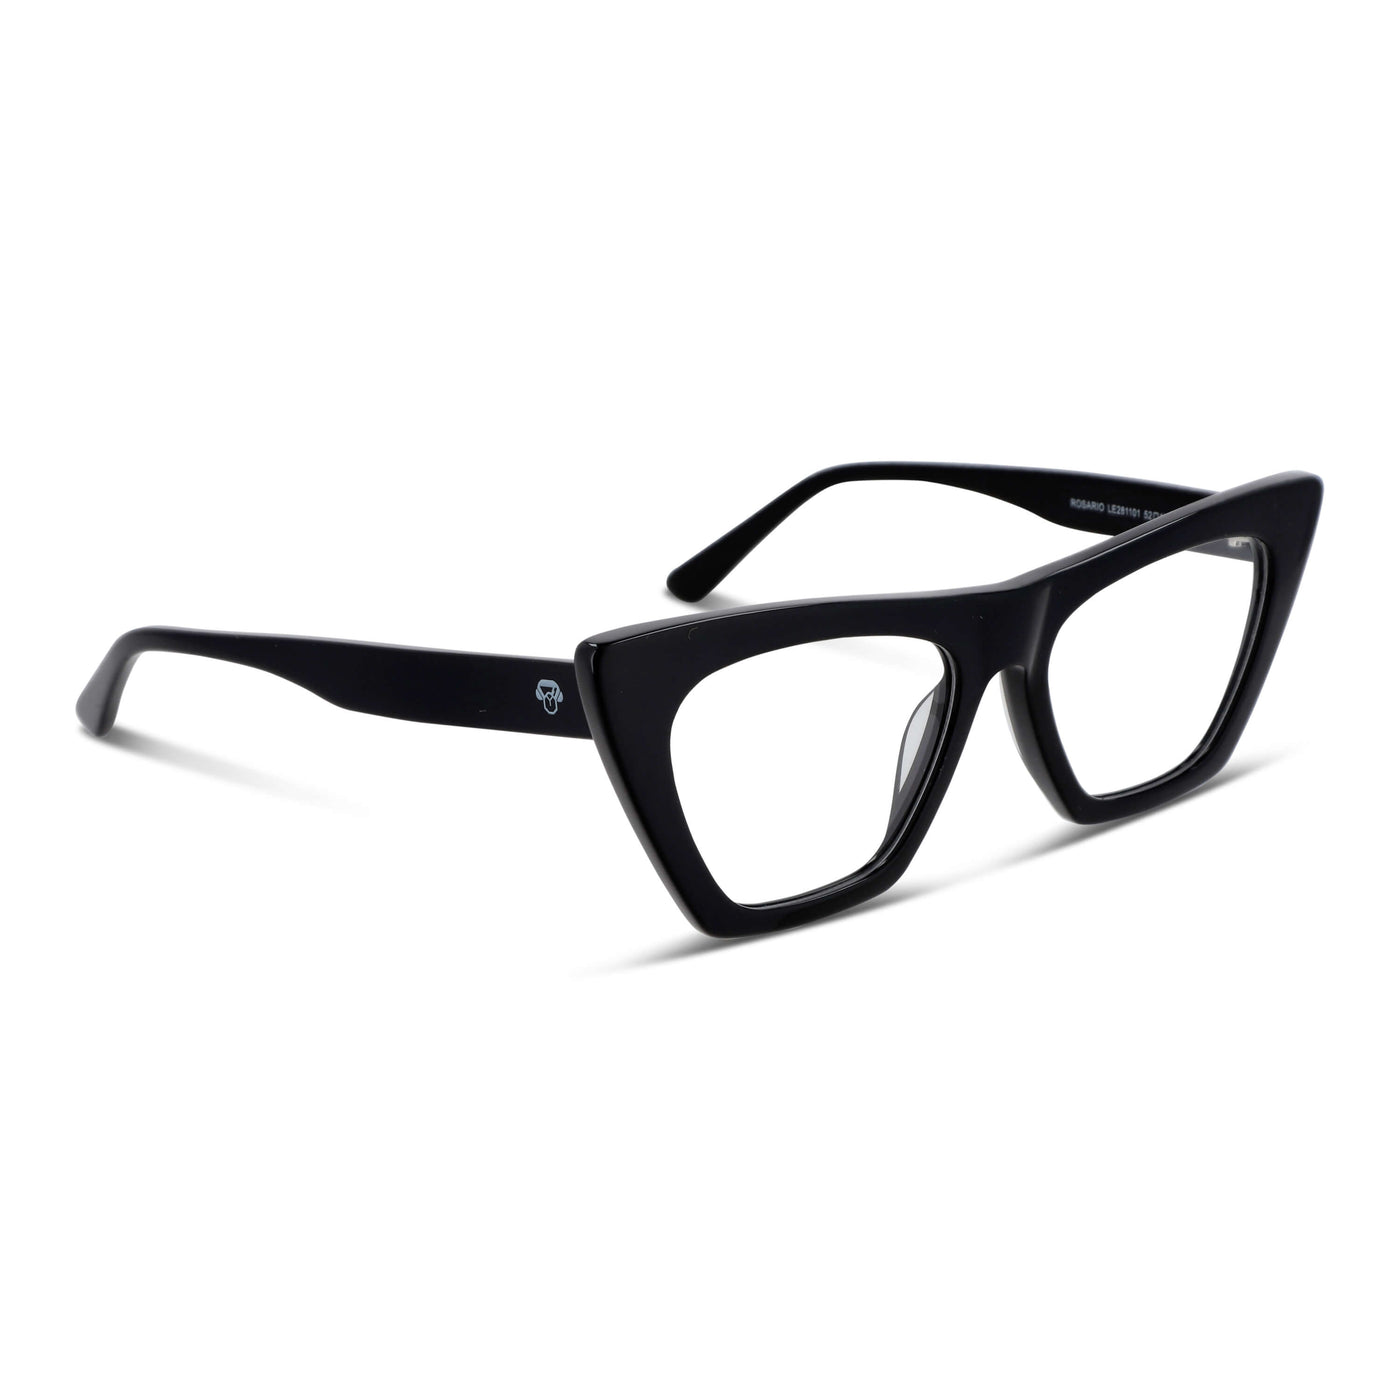  lentes opticos agatados negro mujer cara redonda grande receta multifocal bifocal adelgazado filtro azul.jpg